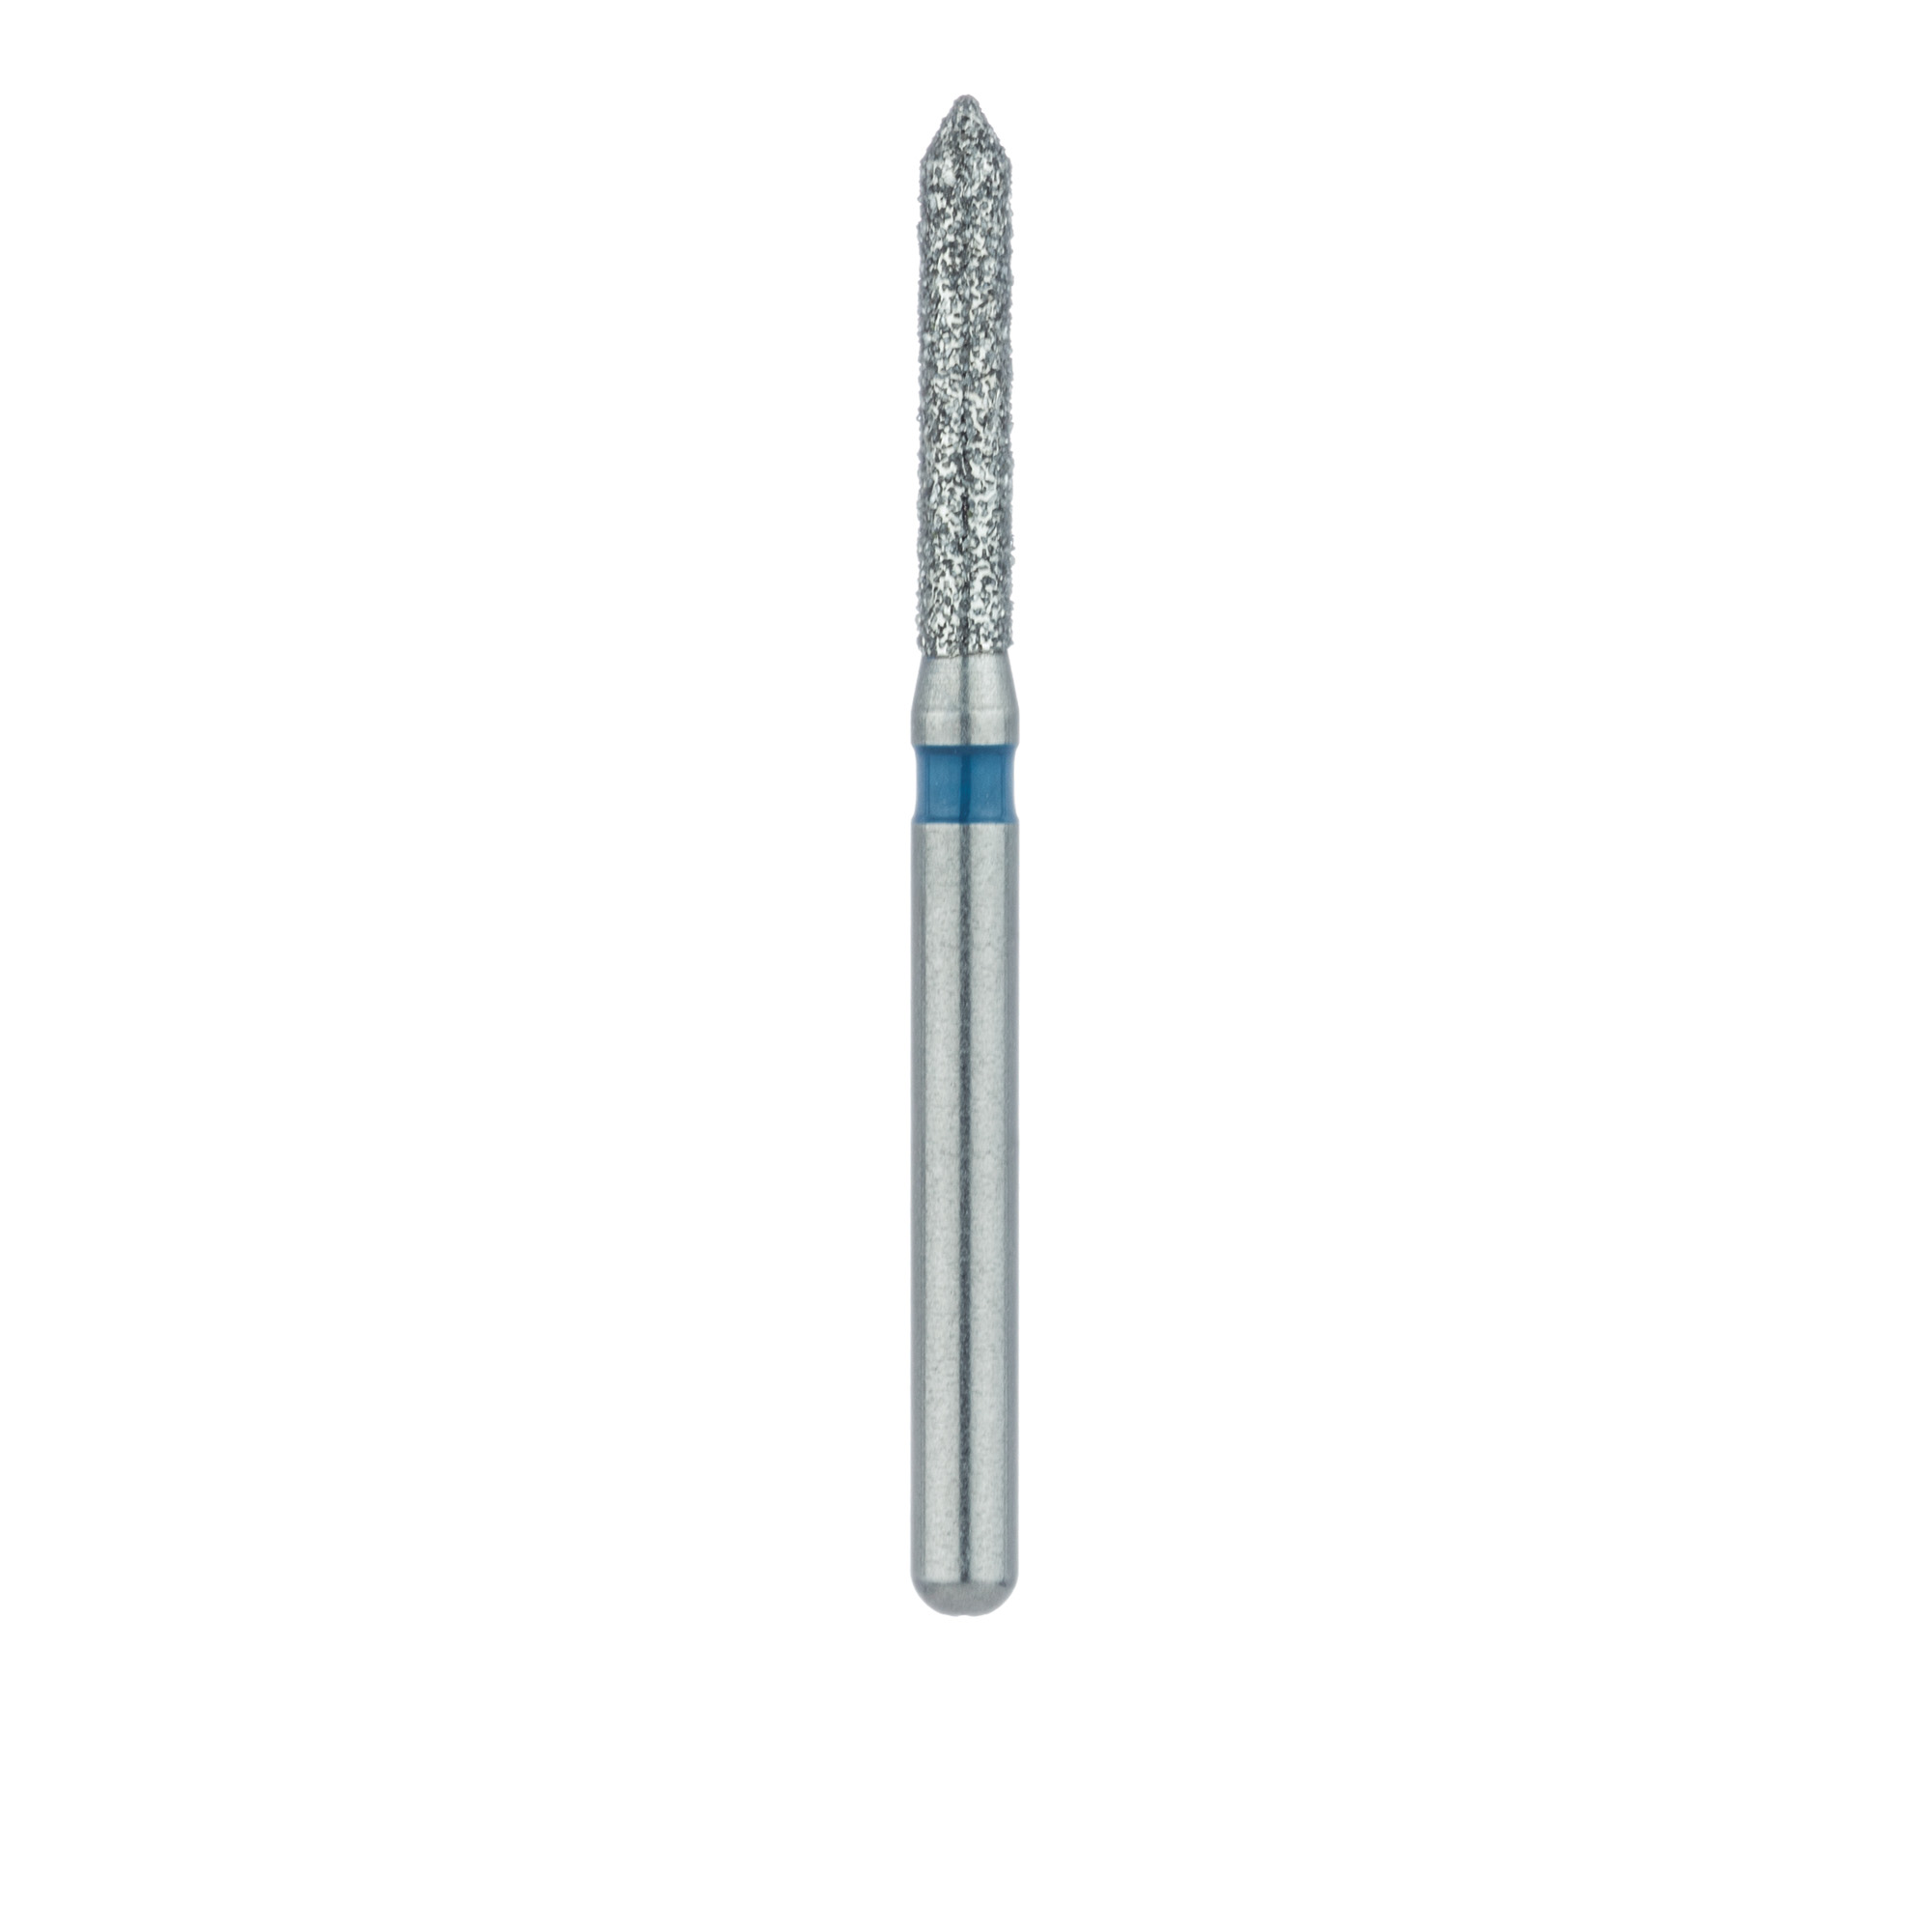 885-014-FG Pointed Tip Cylinder Diamond Bur 1.4mm Medium, FG